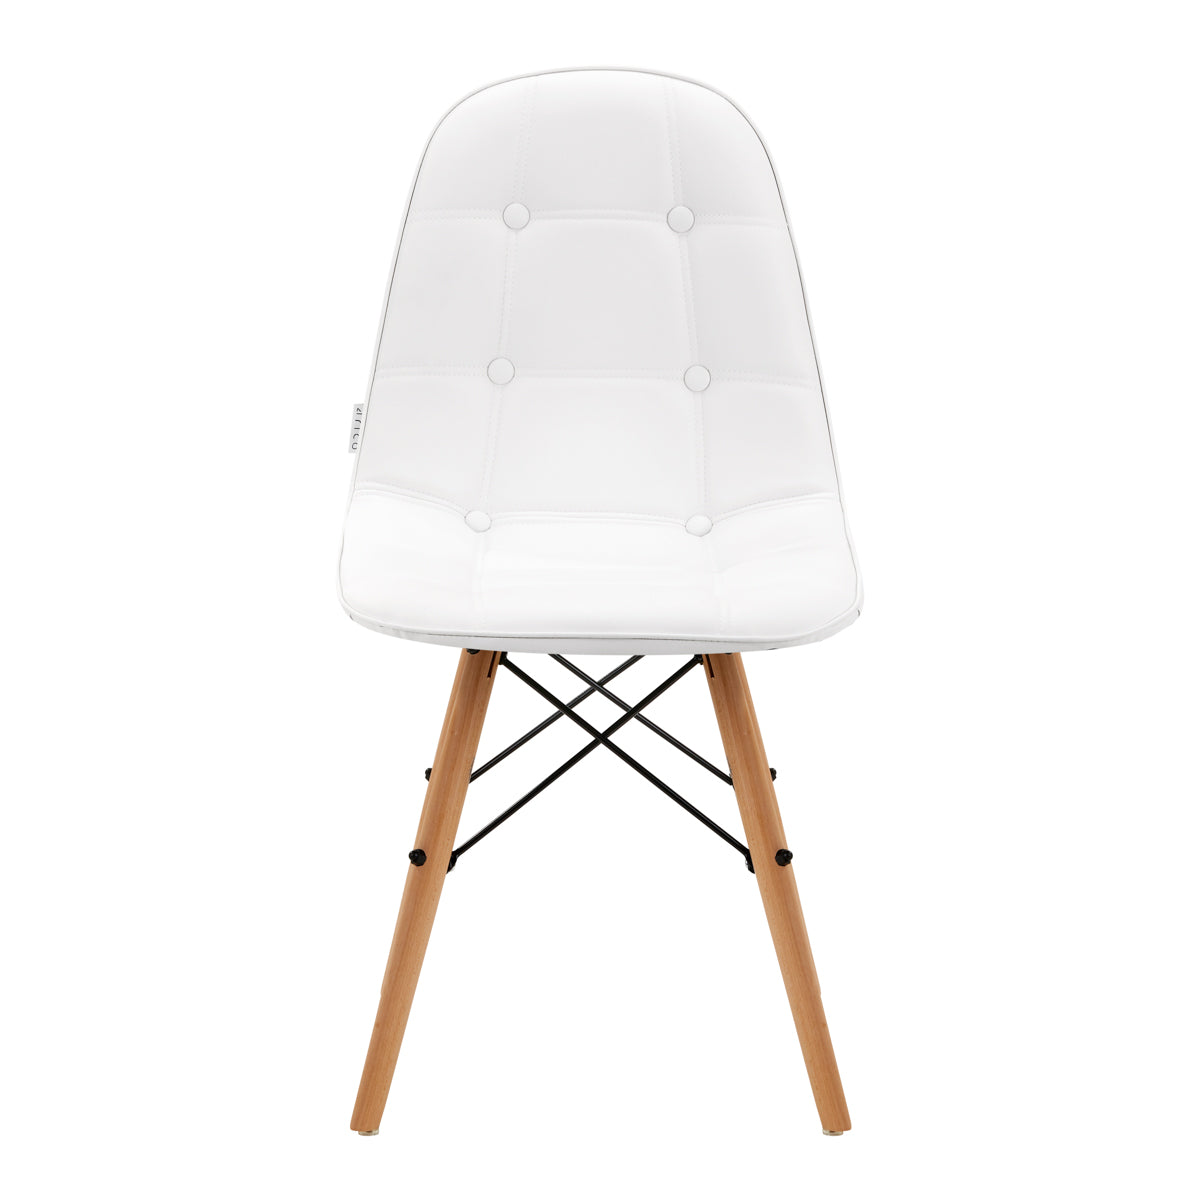 4Rico Cosmetic chair QS-185 white